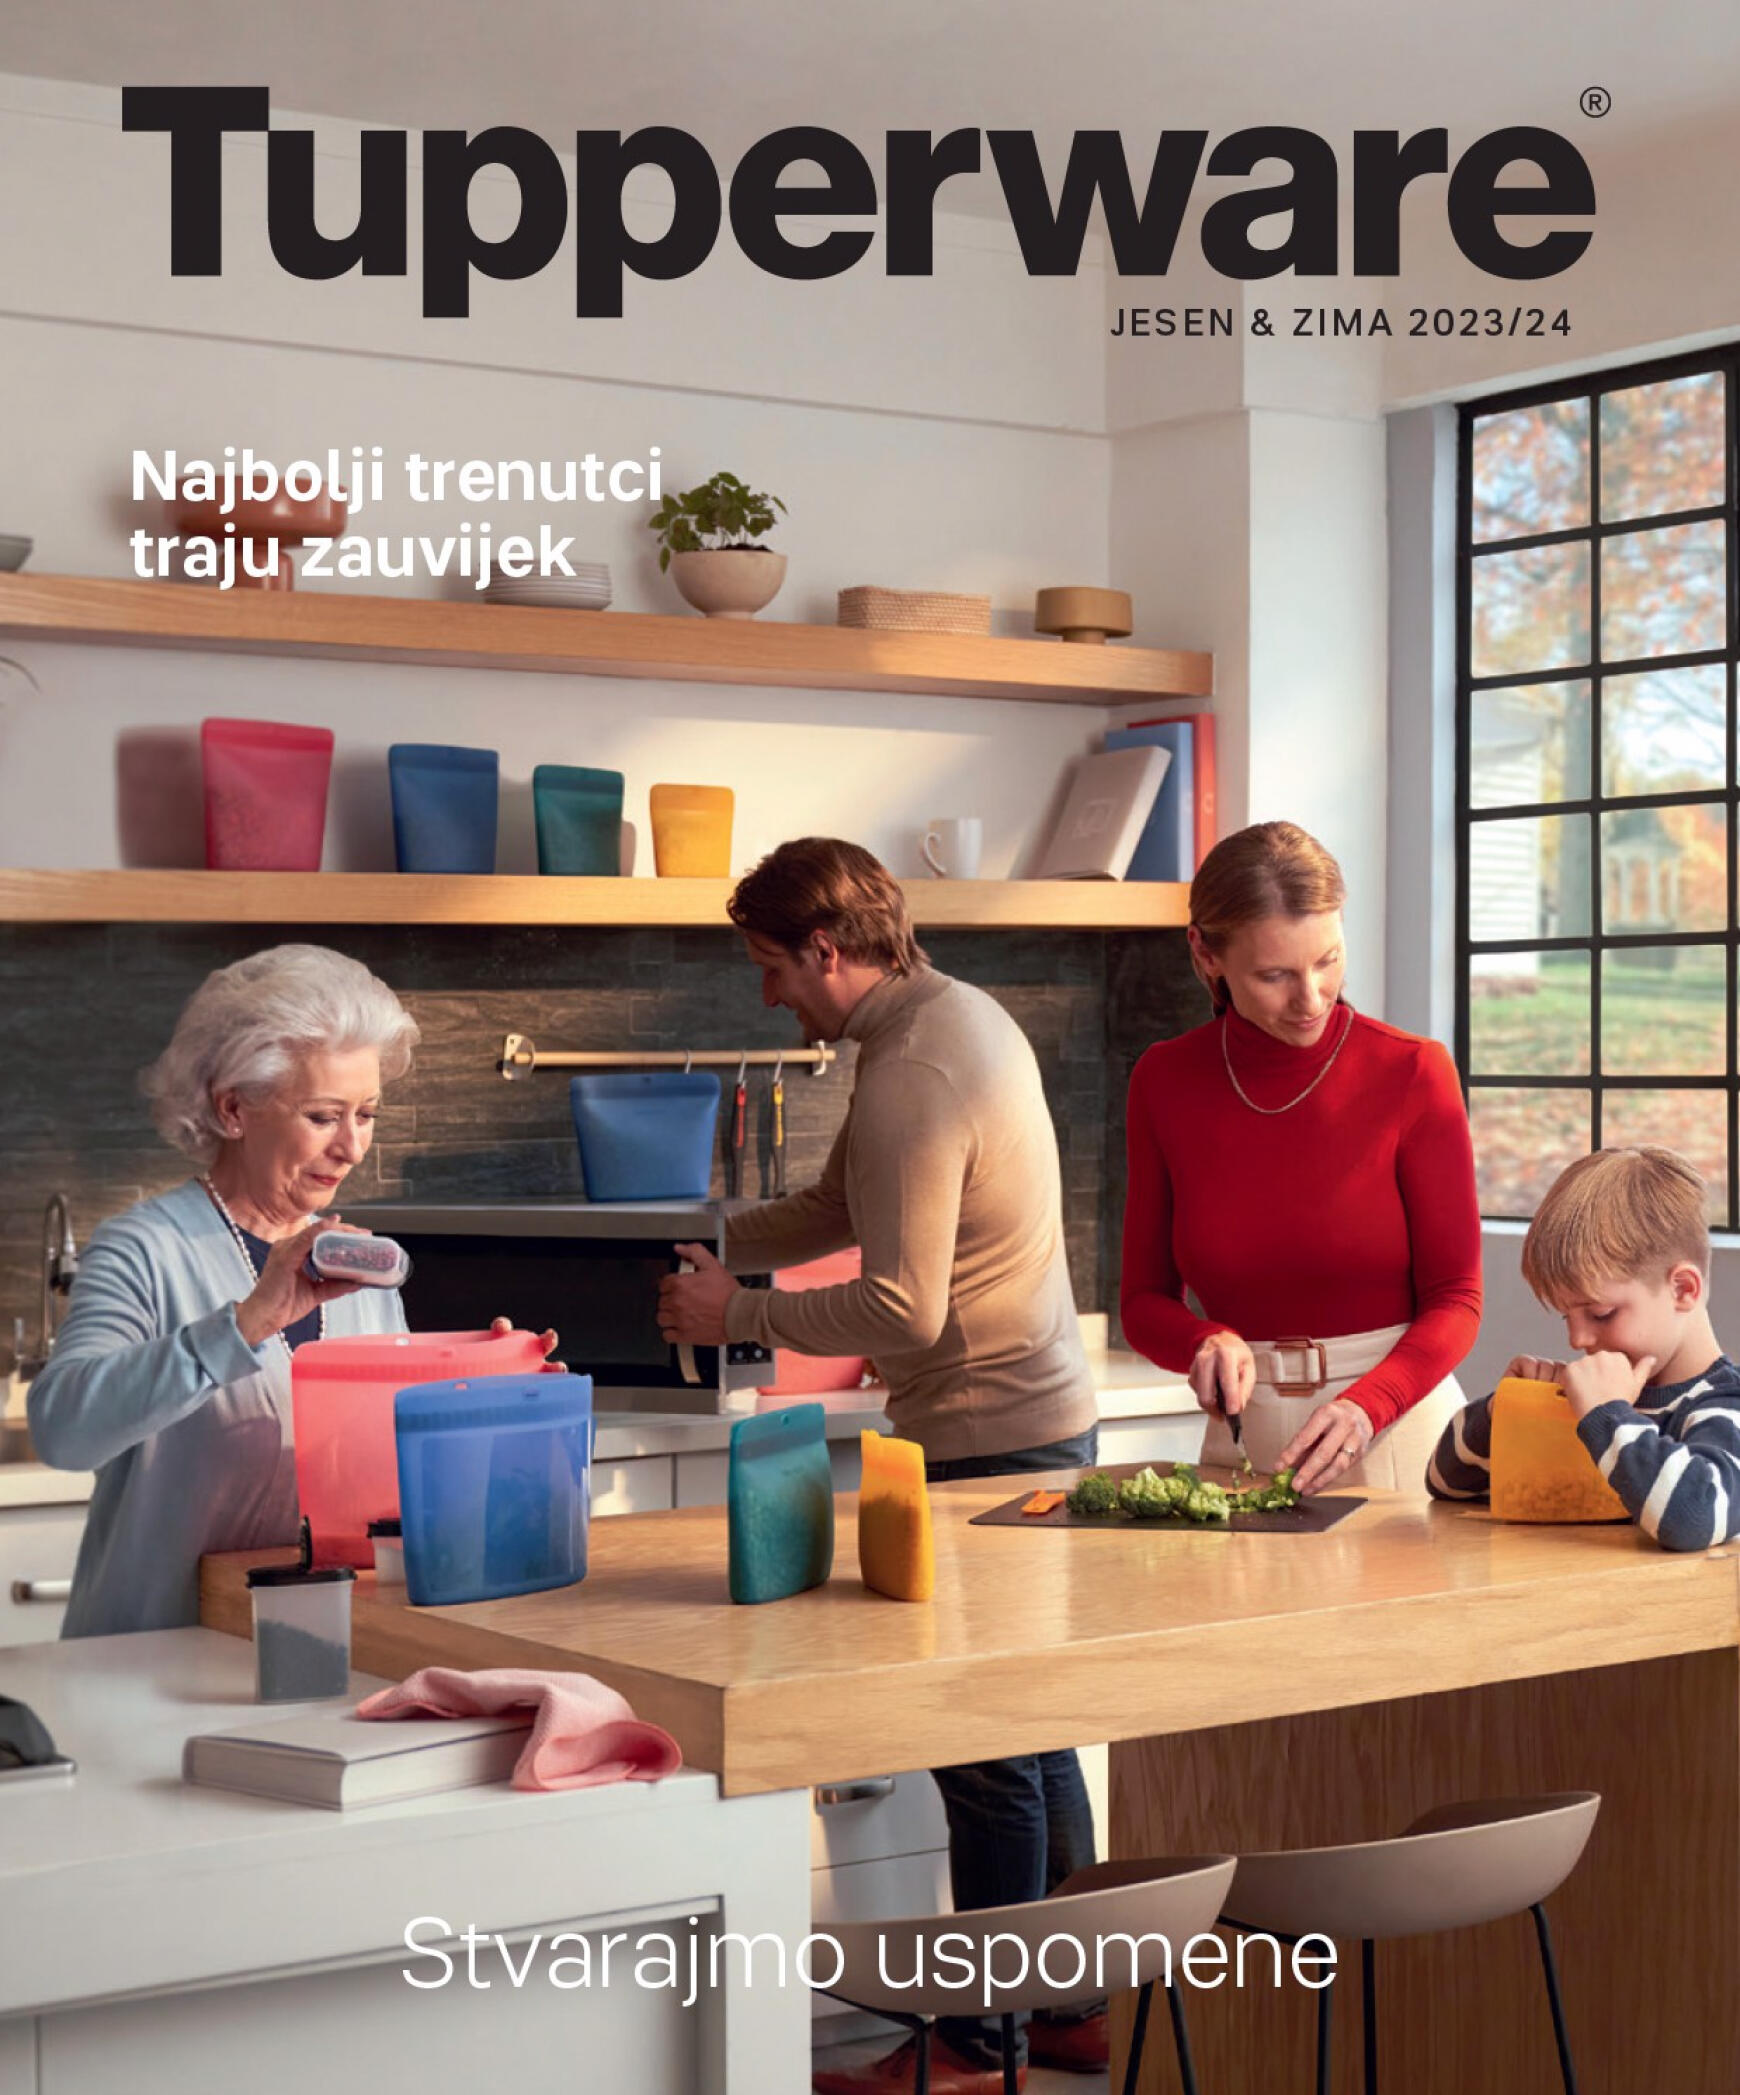 tupperware - Tupperware - JESEN & ZIMA 2023/24 - page: 1